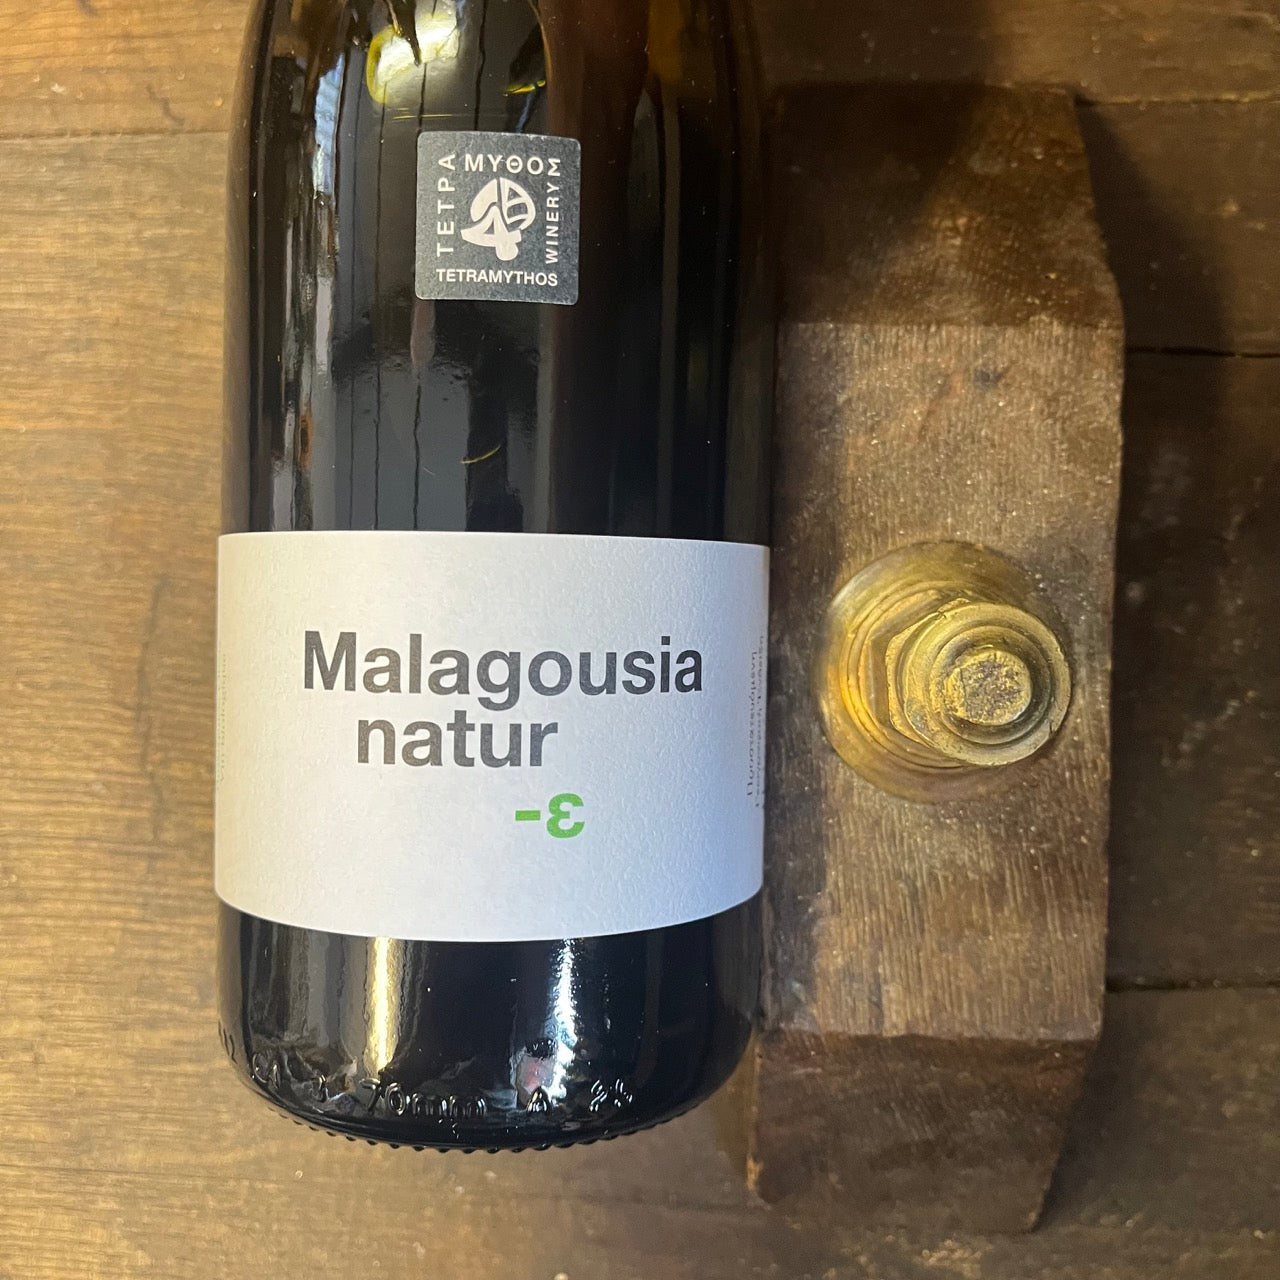 Malagousia natur 2022 - Tetramythos - JusdelaVigne